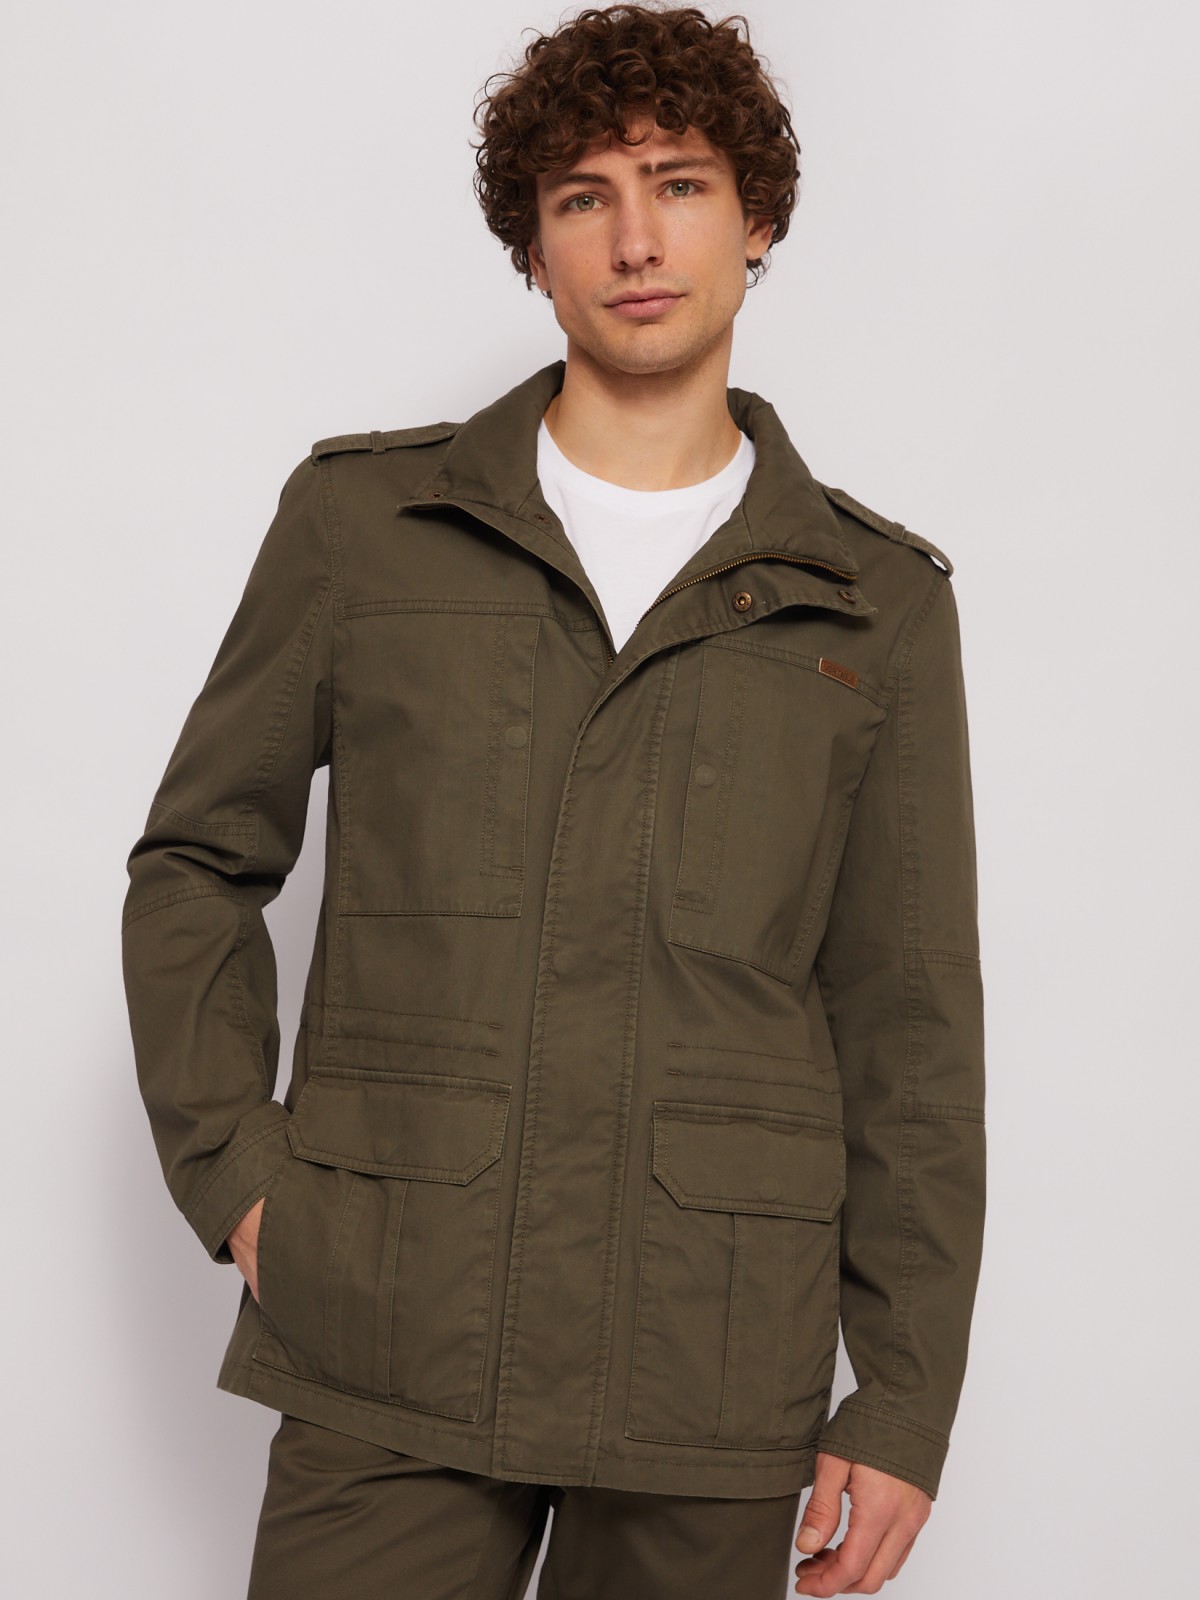 Куртка-ветровка из хлопка с воротником-стойкой zolla 014215602014, цвет хаки, размер L - фото 3